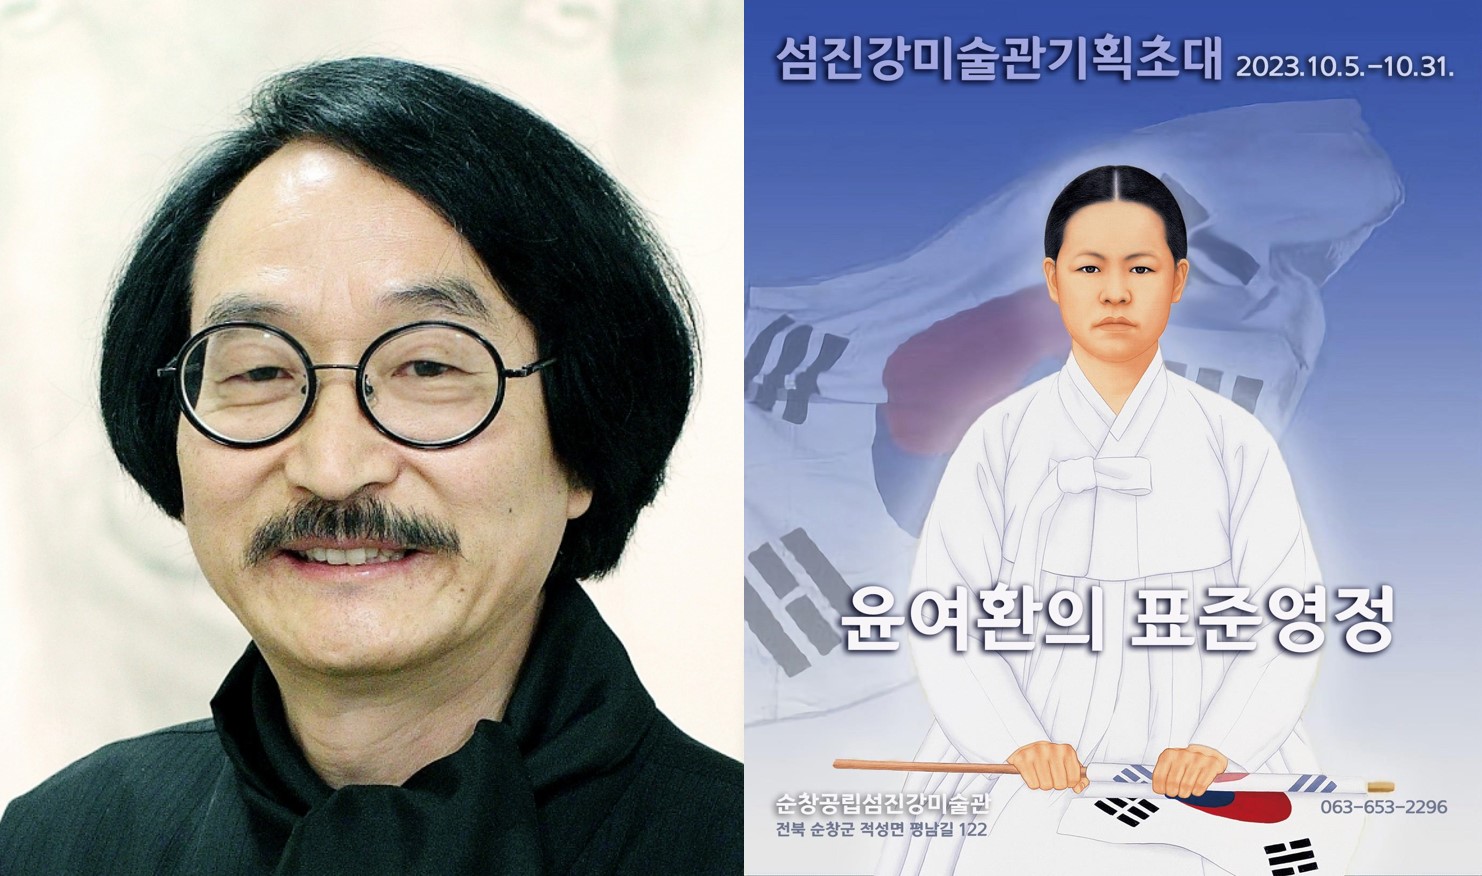 윤여환 명예교수, ‘윤여환의 표준영정’展 개최 이미지